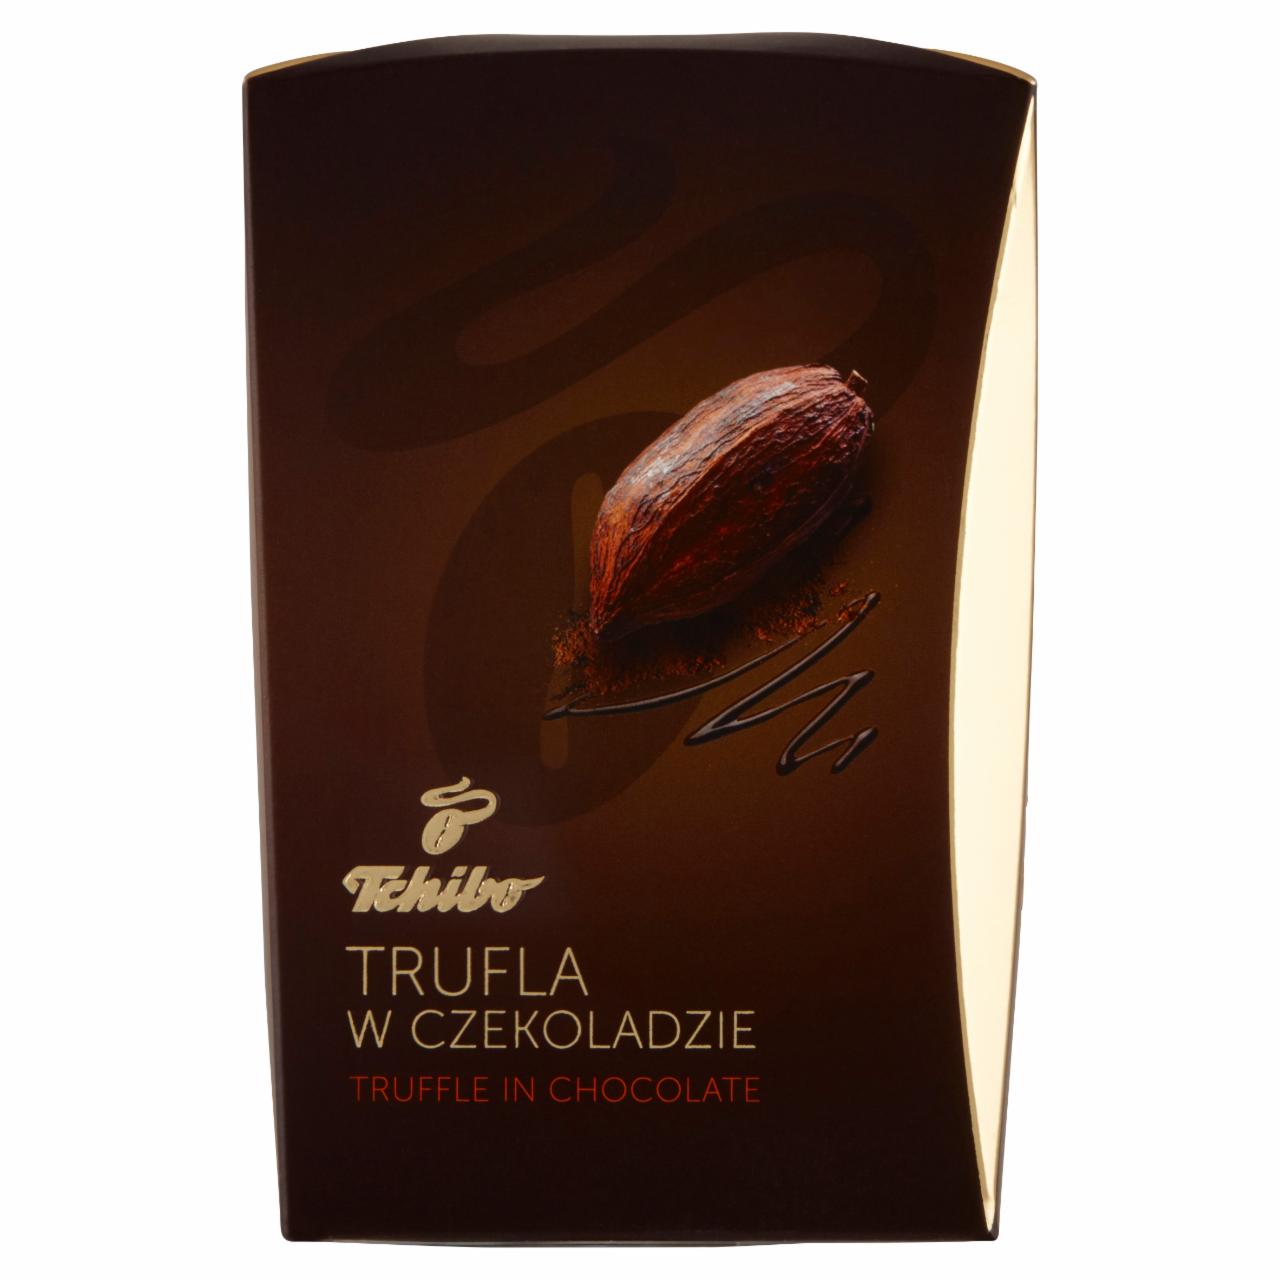 Zdjęcia - Tchibo Trufla w czekoladzie 250 g